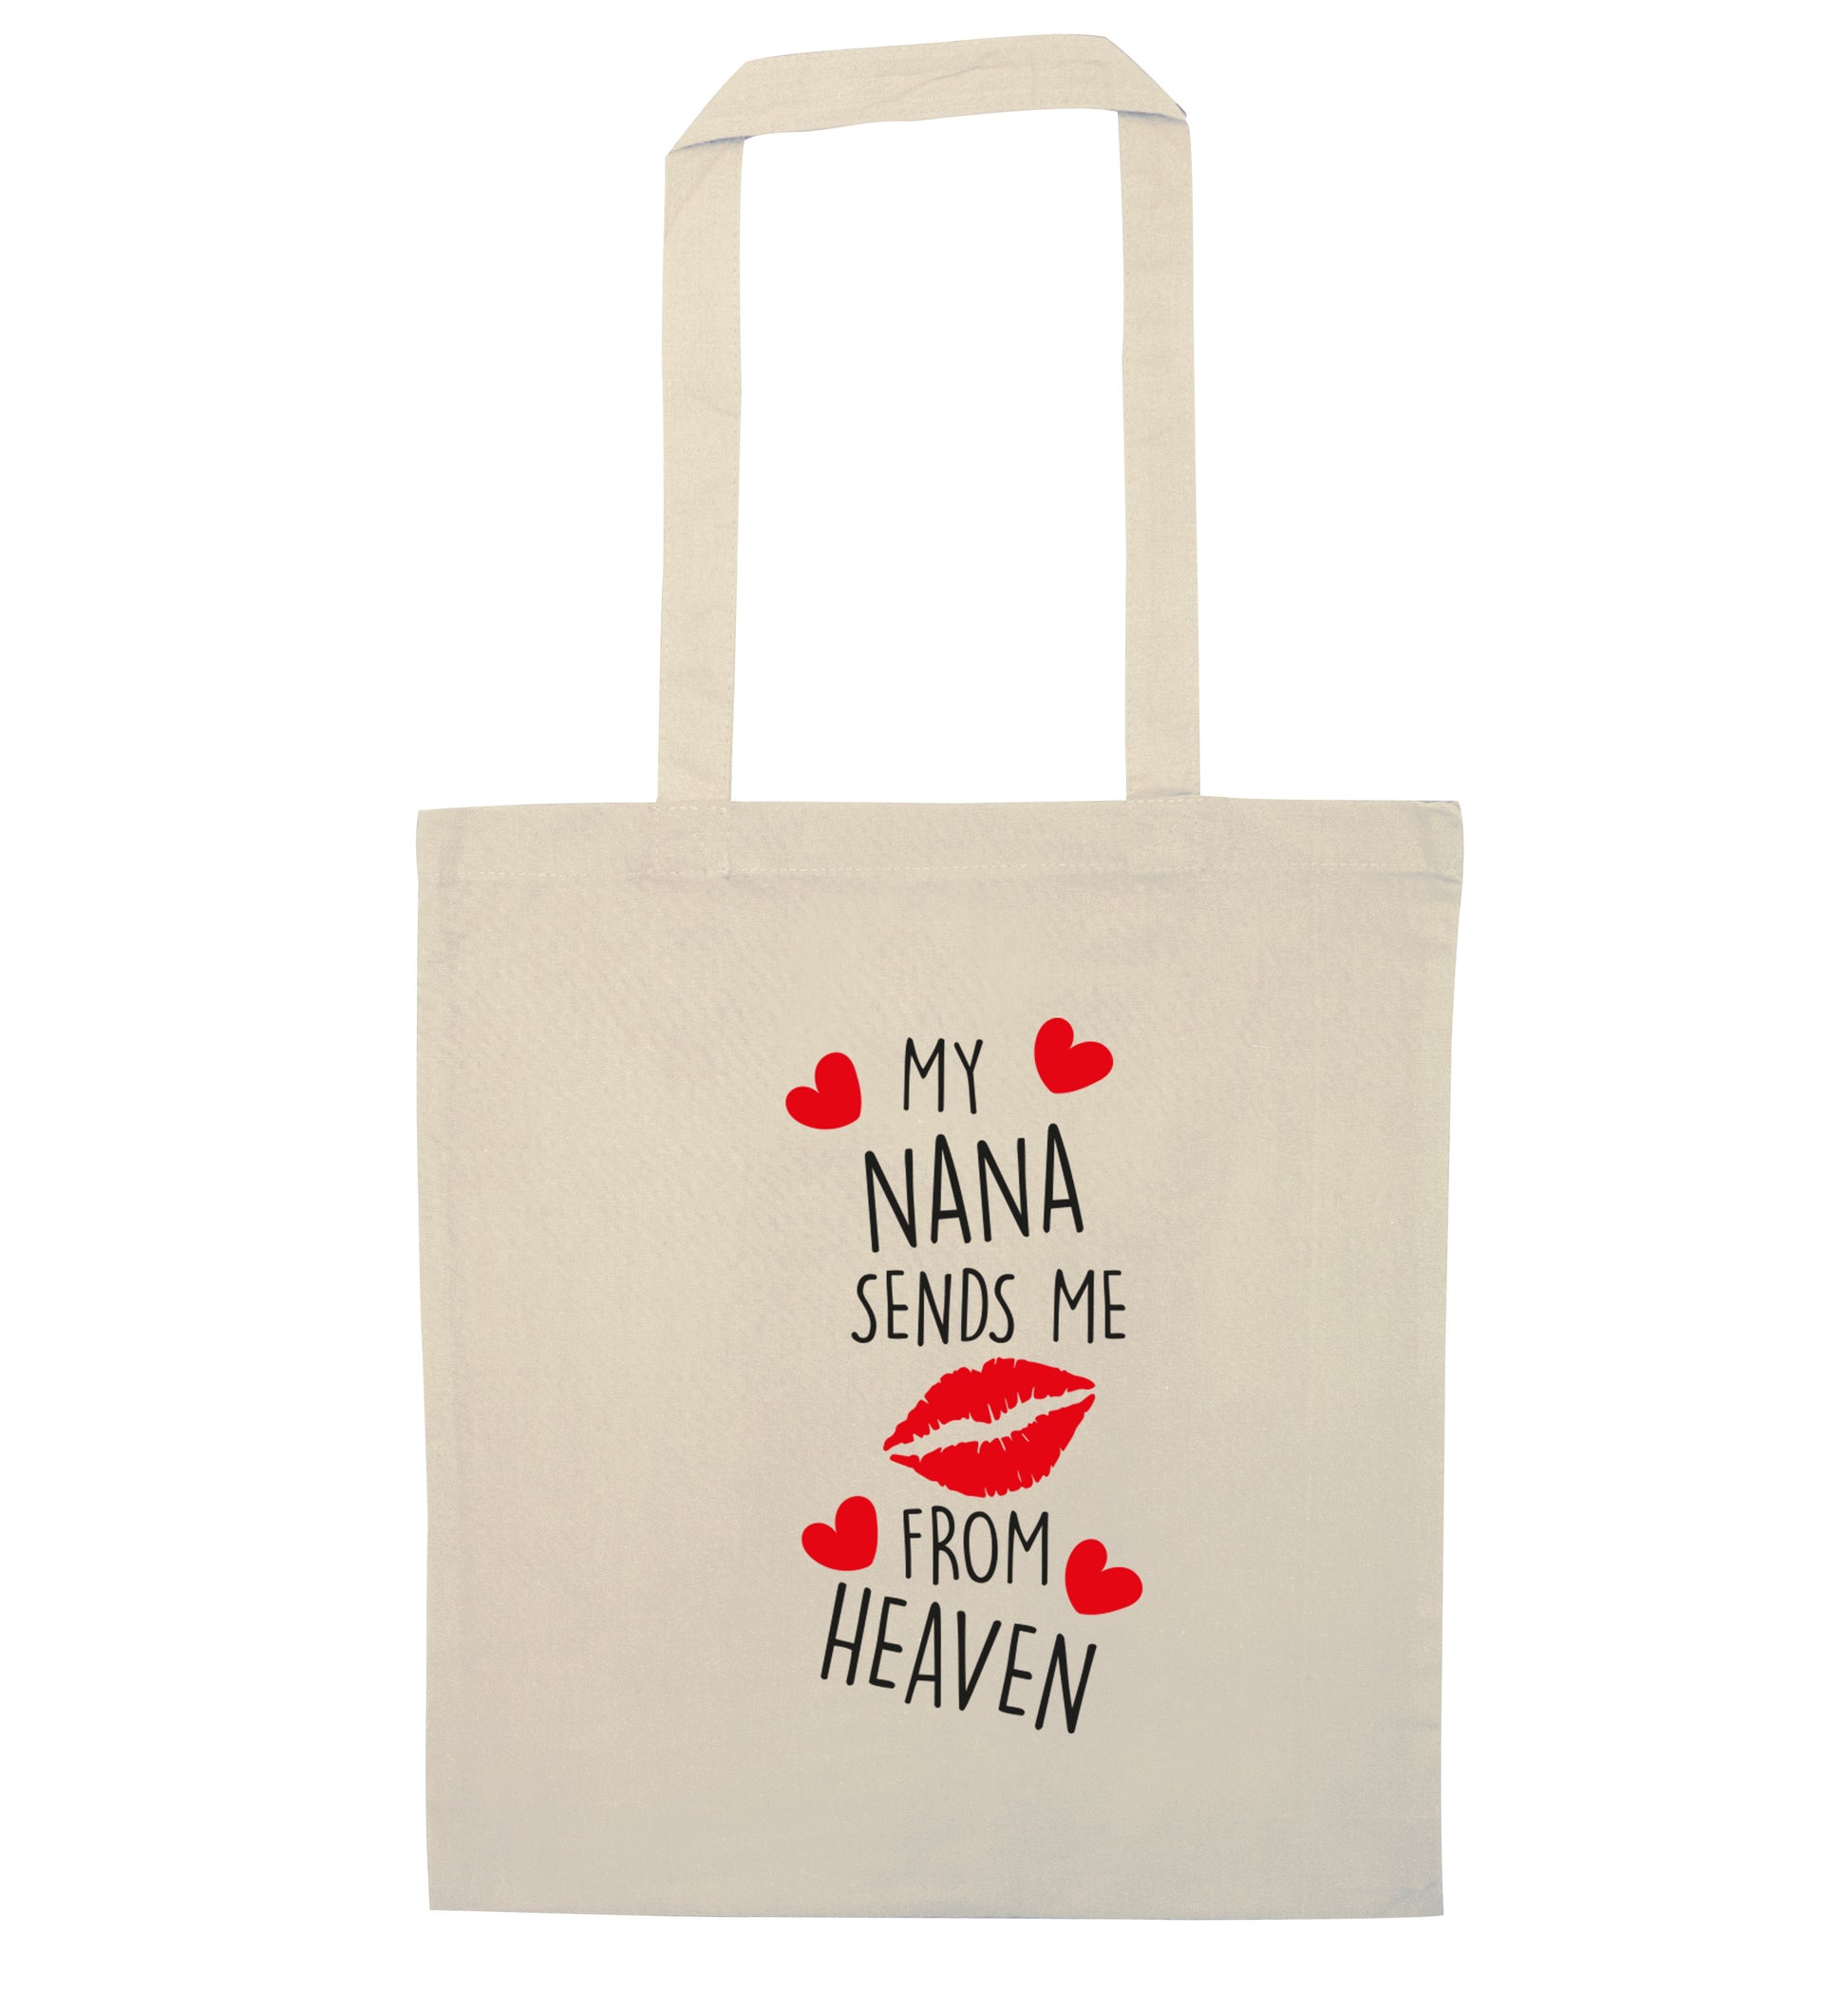 My nana sends me kisses from heaven natural tote bag